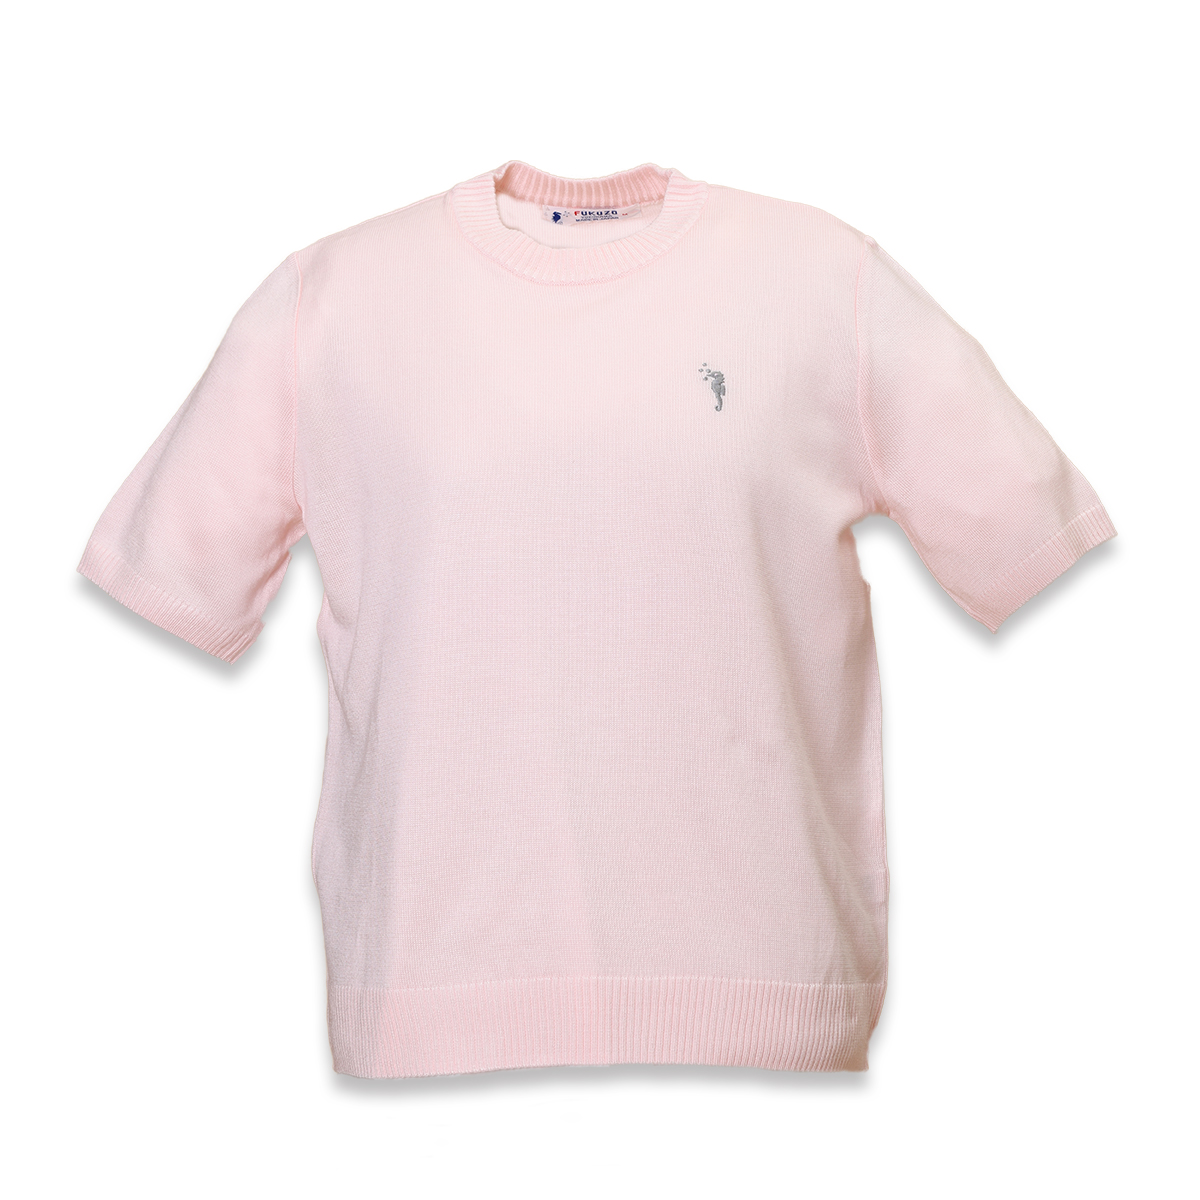 ラルゴ クルーセーター半袖 ピンク